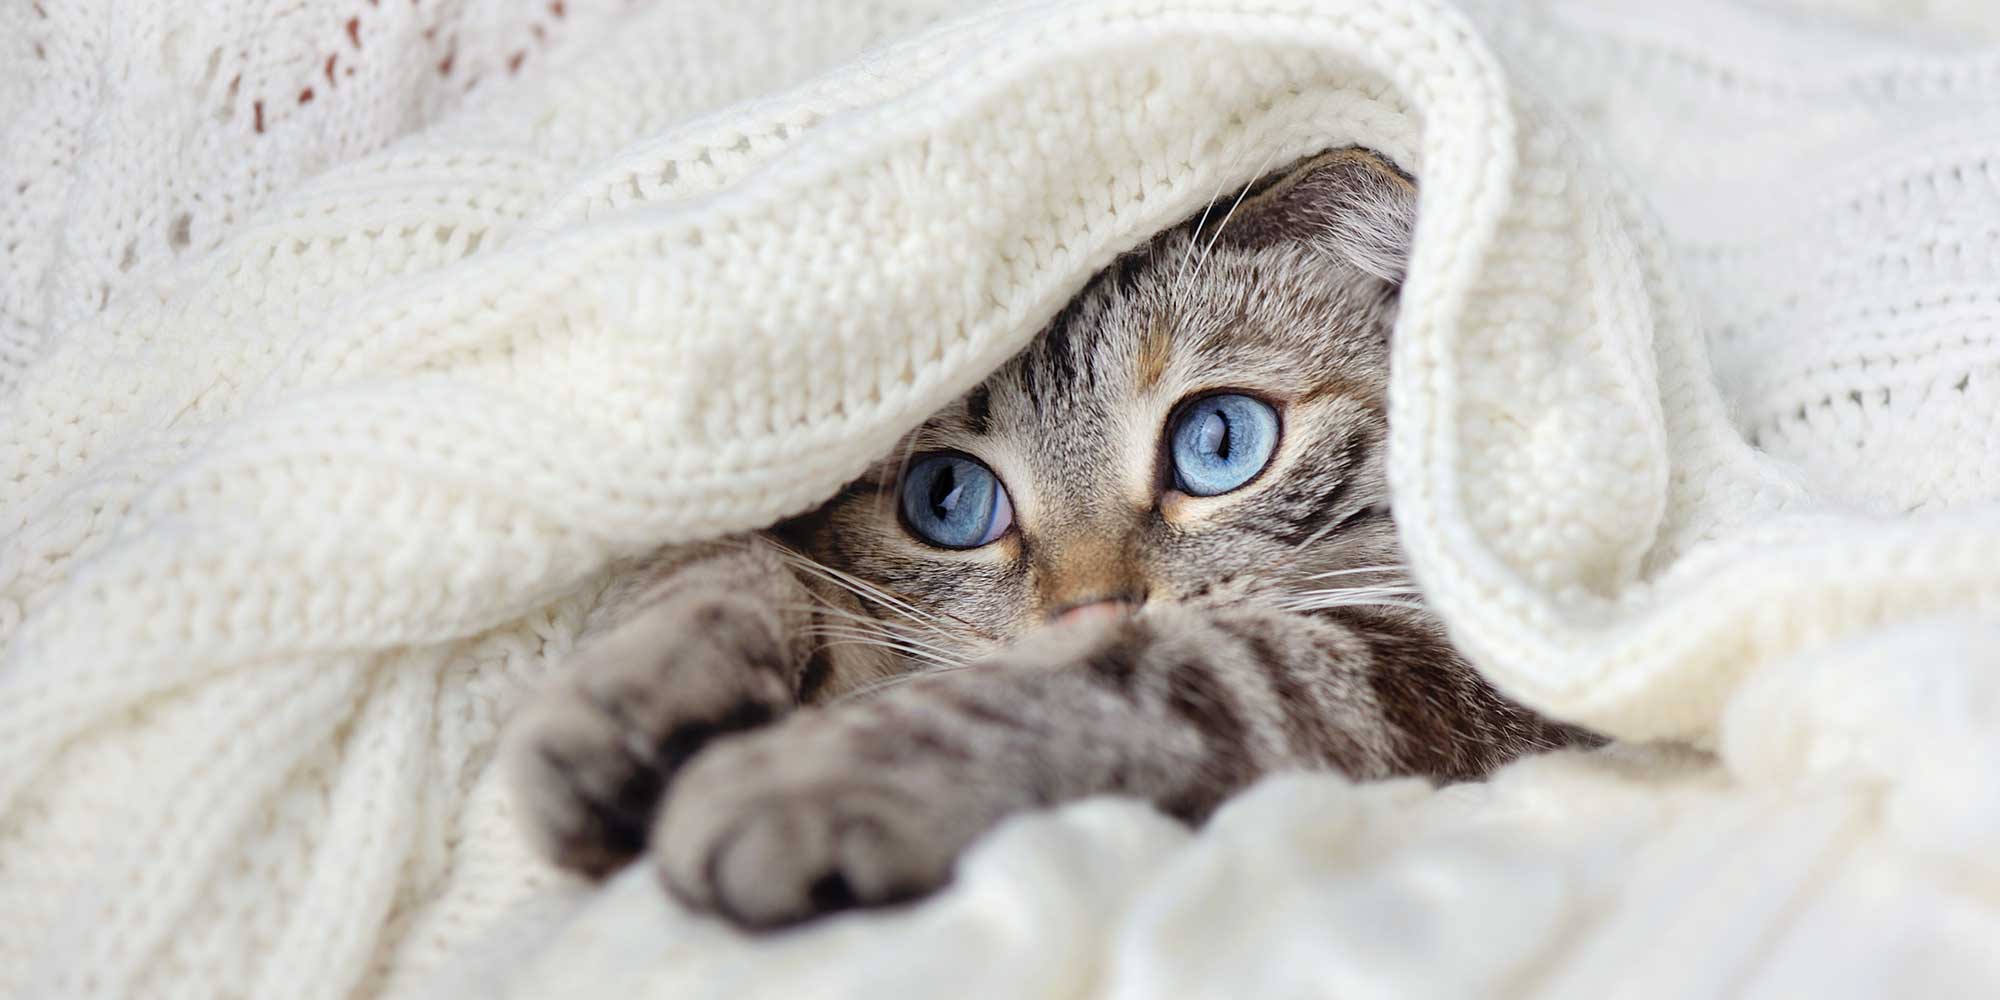 A tabby cat hiding in a blanket